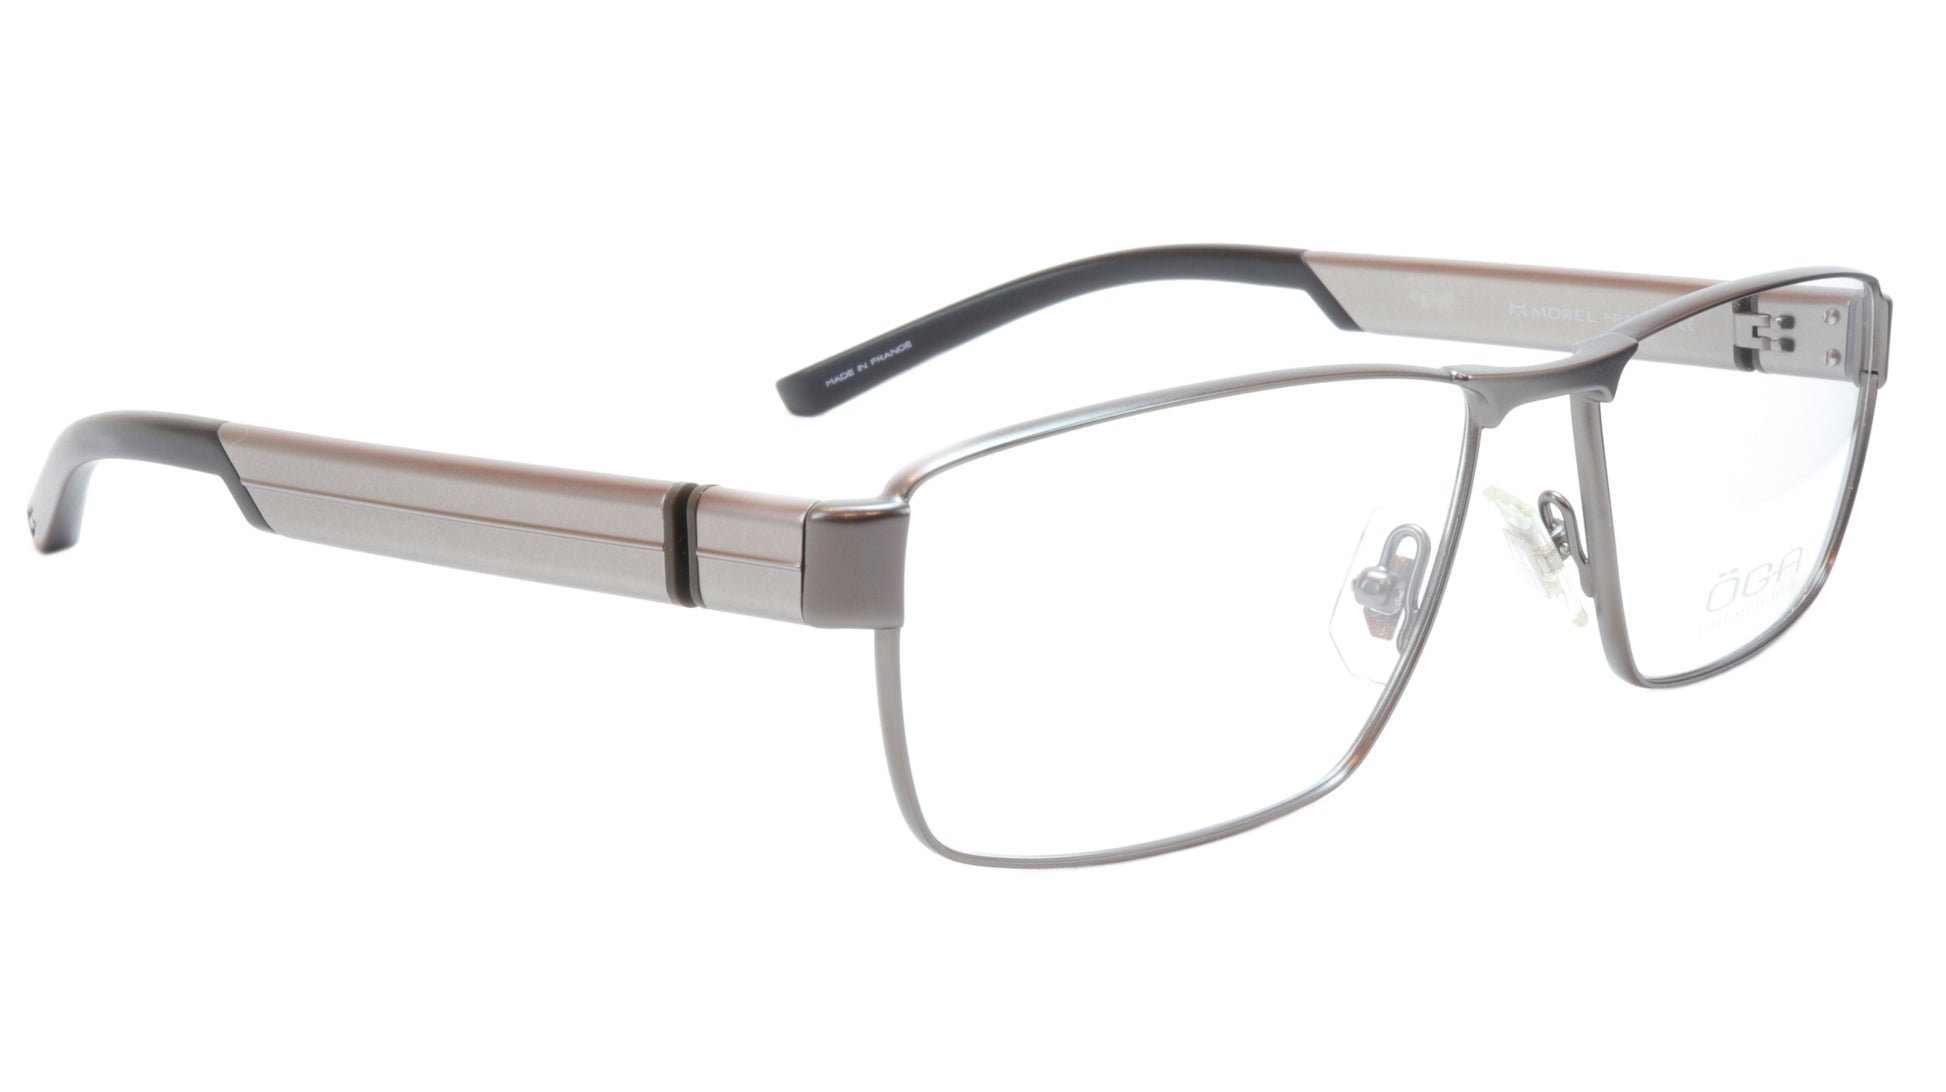 OGA Morel Eyeglasses Frame 76540 GG060 Metal Acetate Gunmetal Silver France - Frame Bay